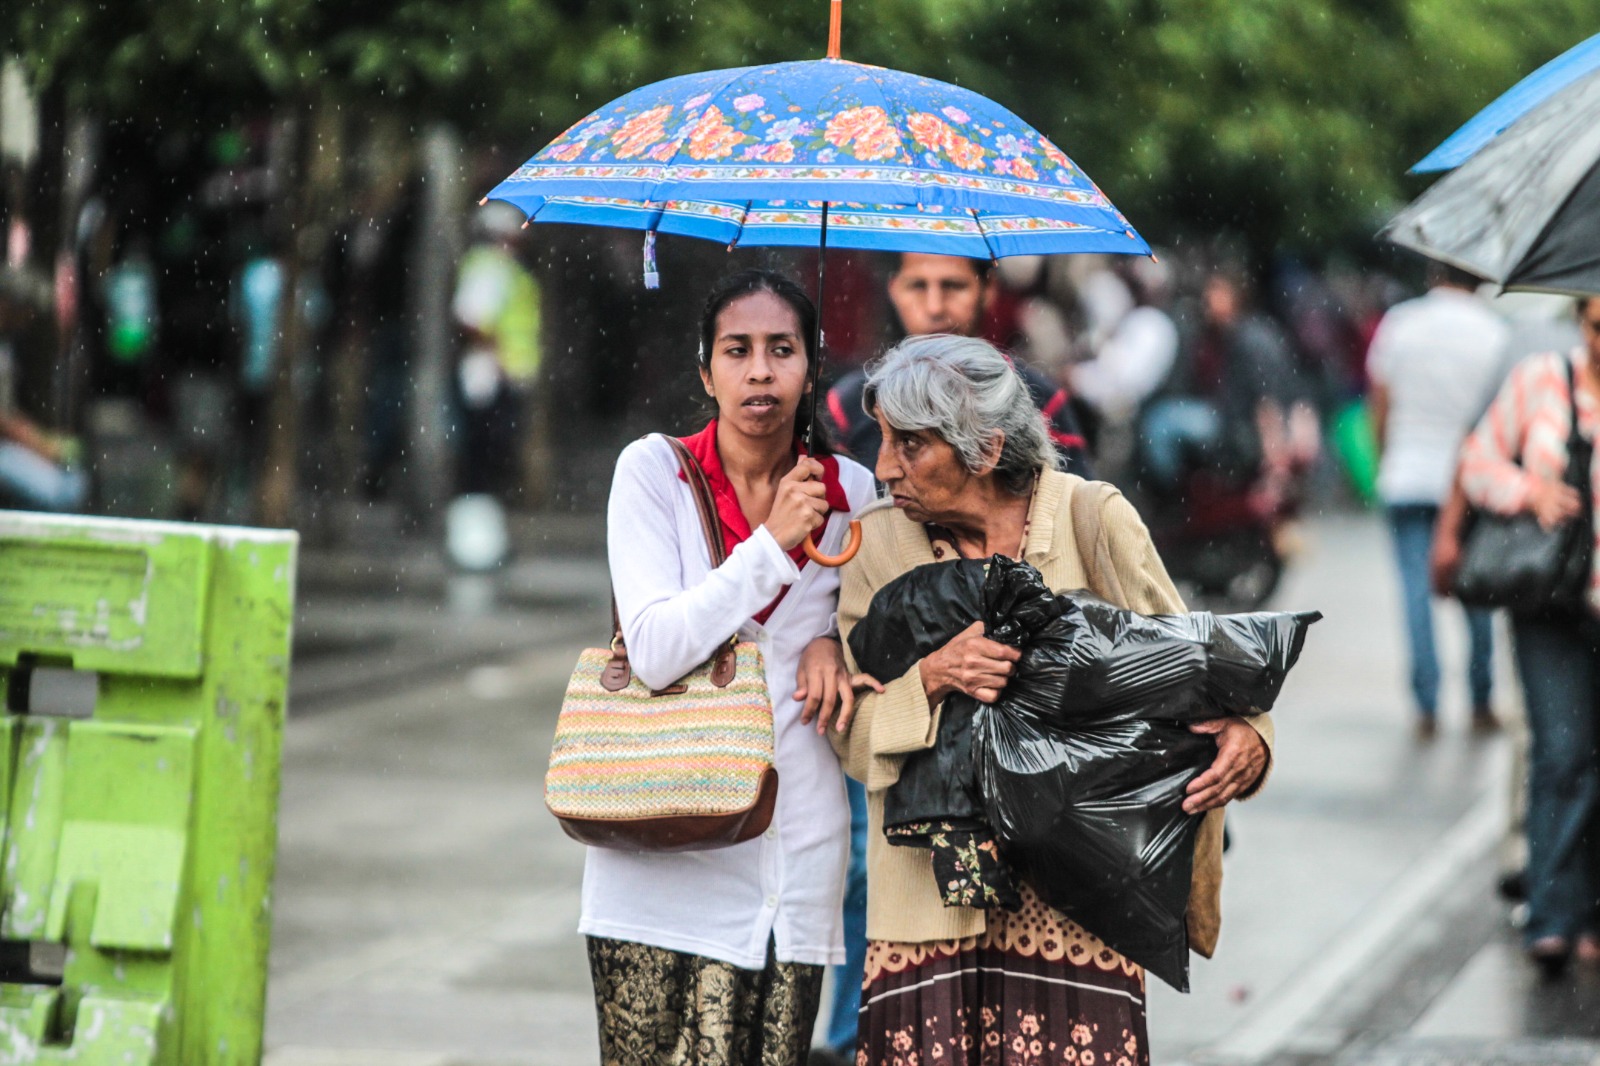 Las lluvias y el frío continuarán en Guatemala, según el Insivumeh y SMG. (Foto Prensa Libre: Keneth Cruz)